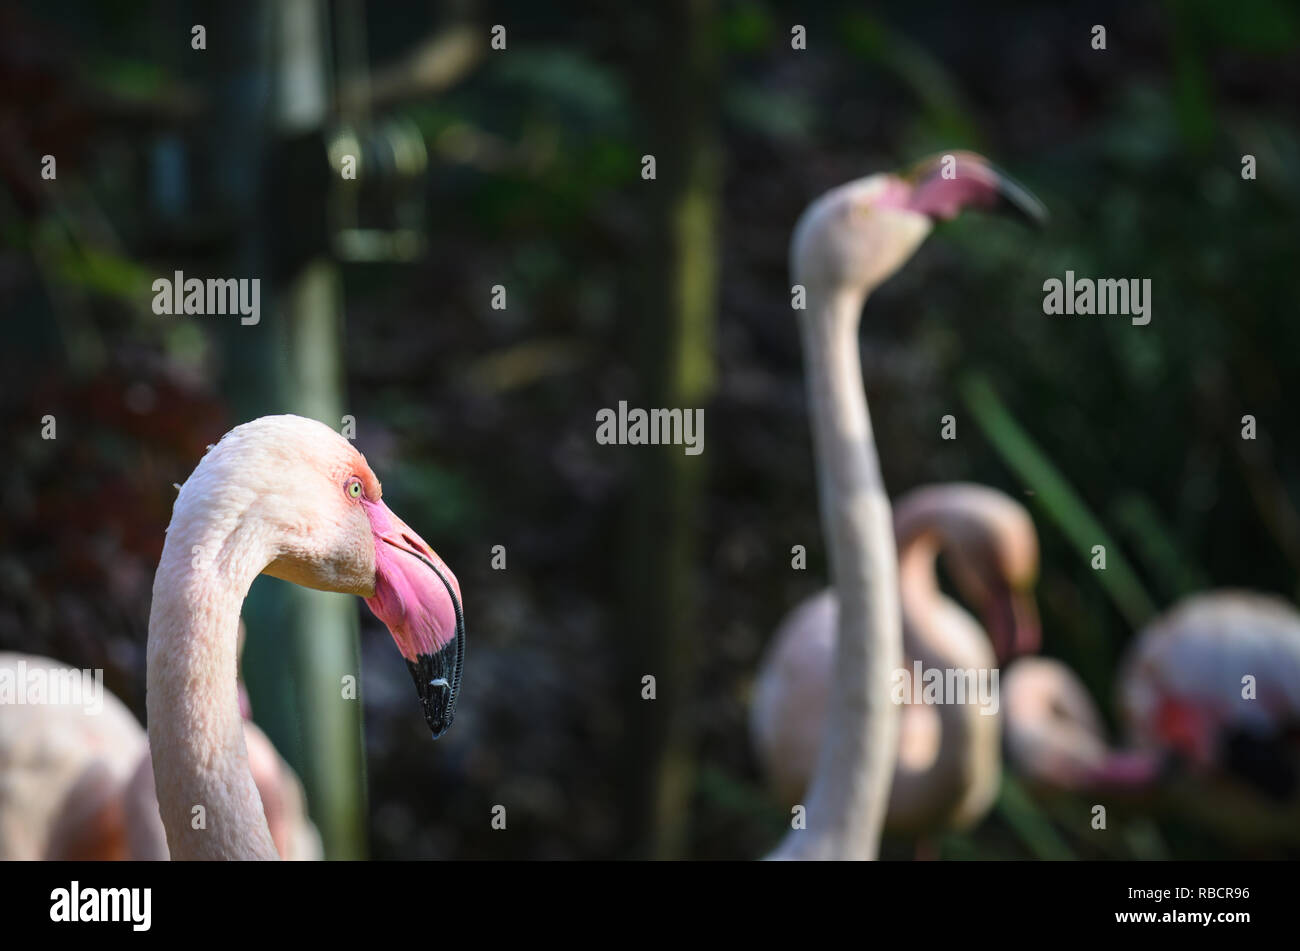 Les flamants (flamants roses) tête dans le foorground, dans la forêt. Ils sont un type d'oiseau échassier de la famille des Coraciidés. Banque D'Images